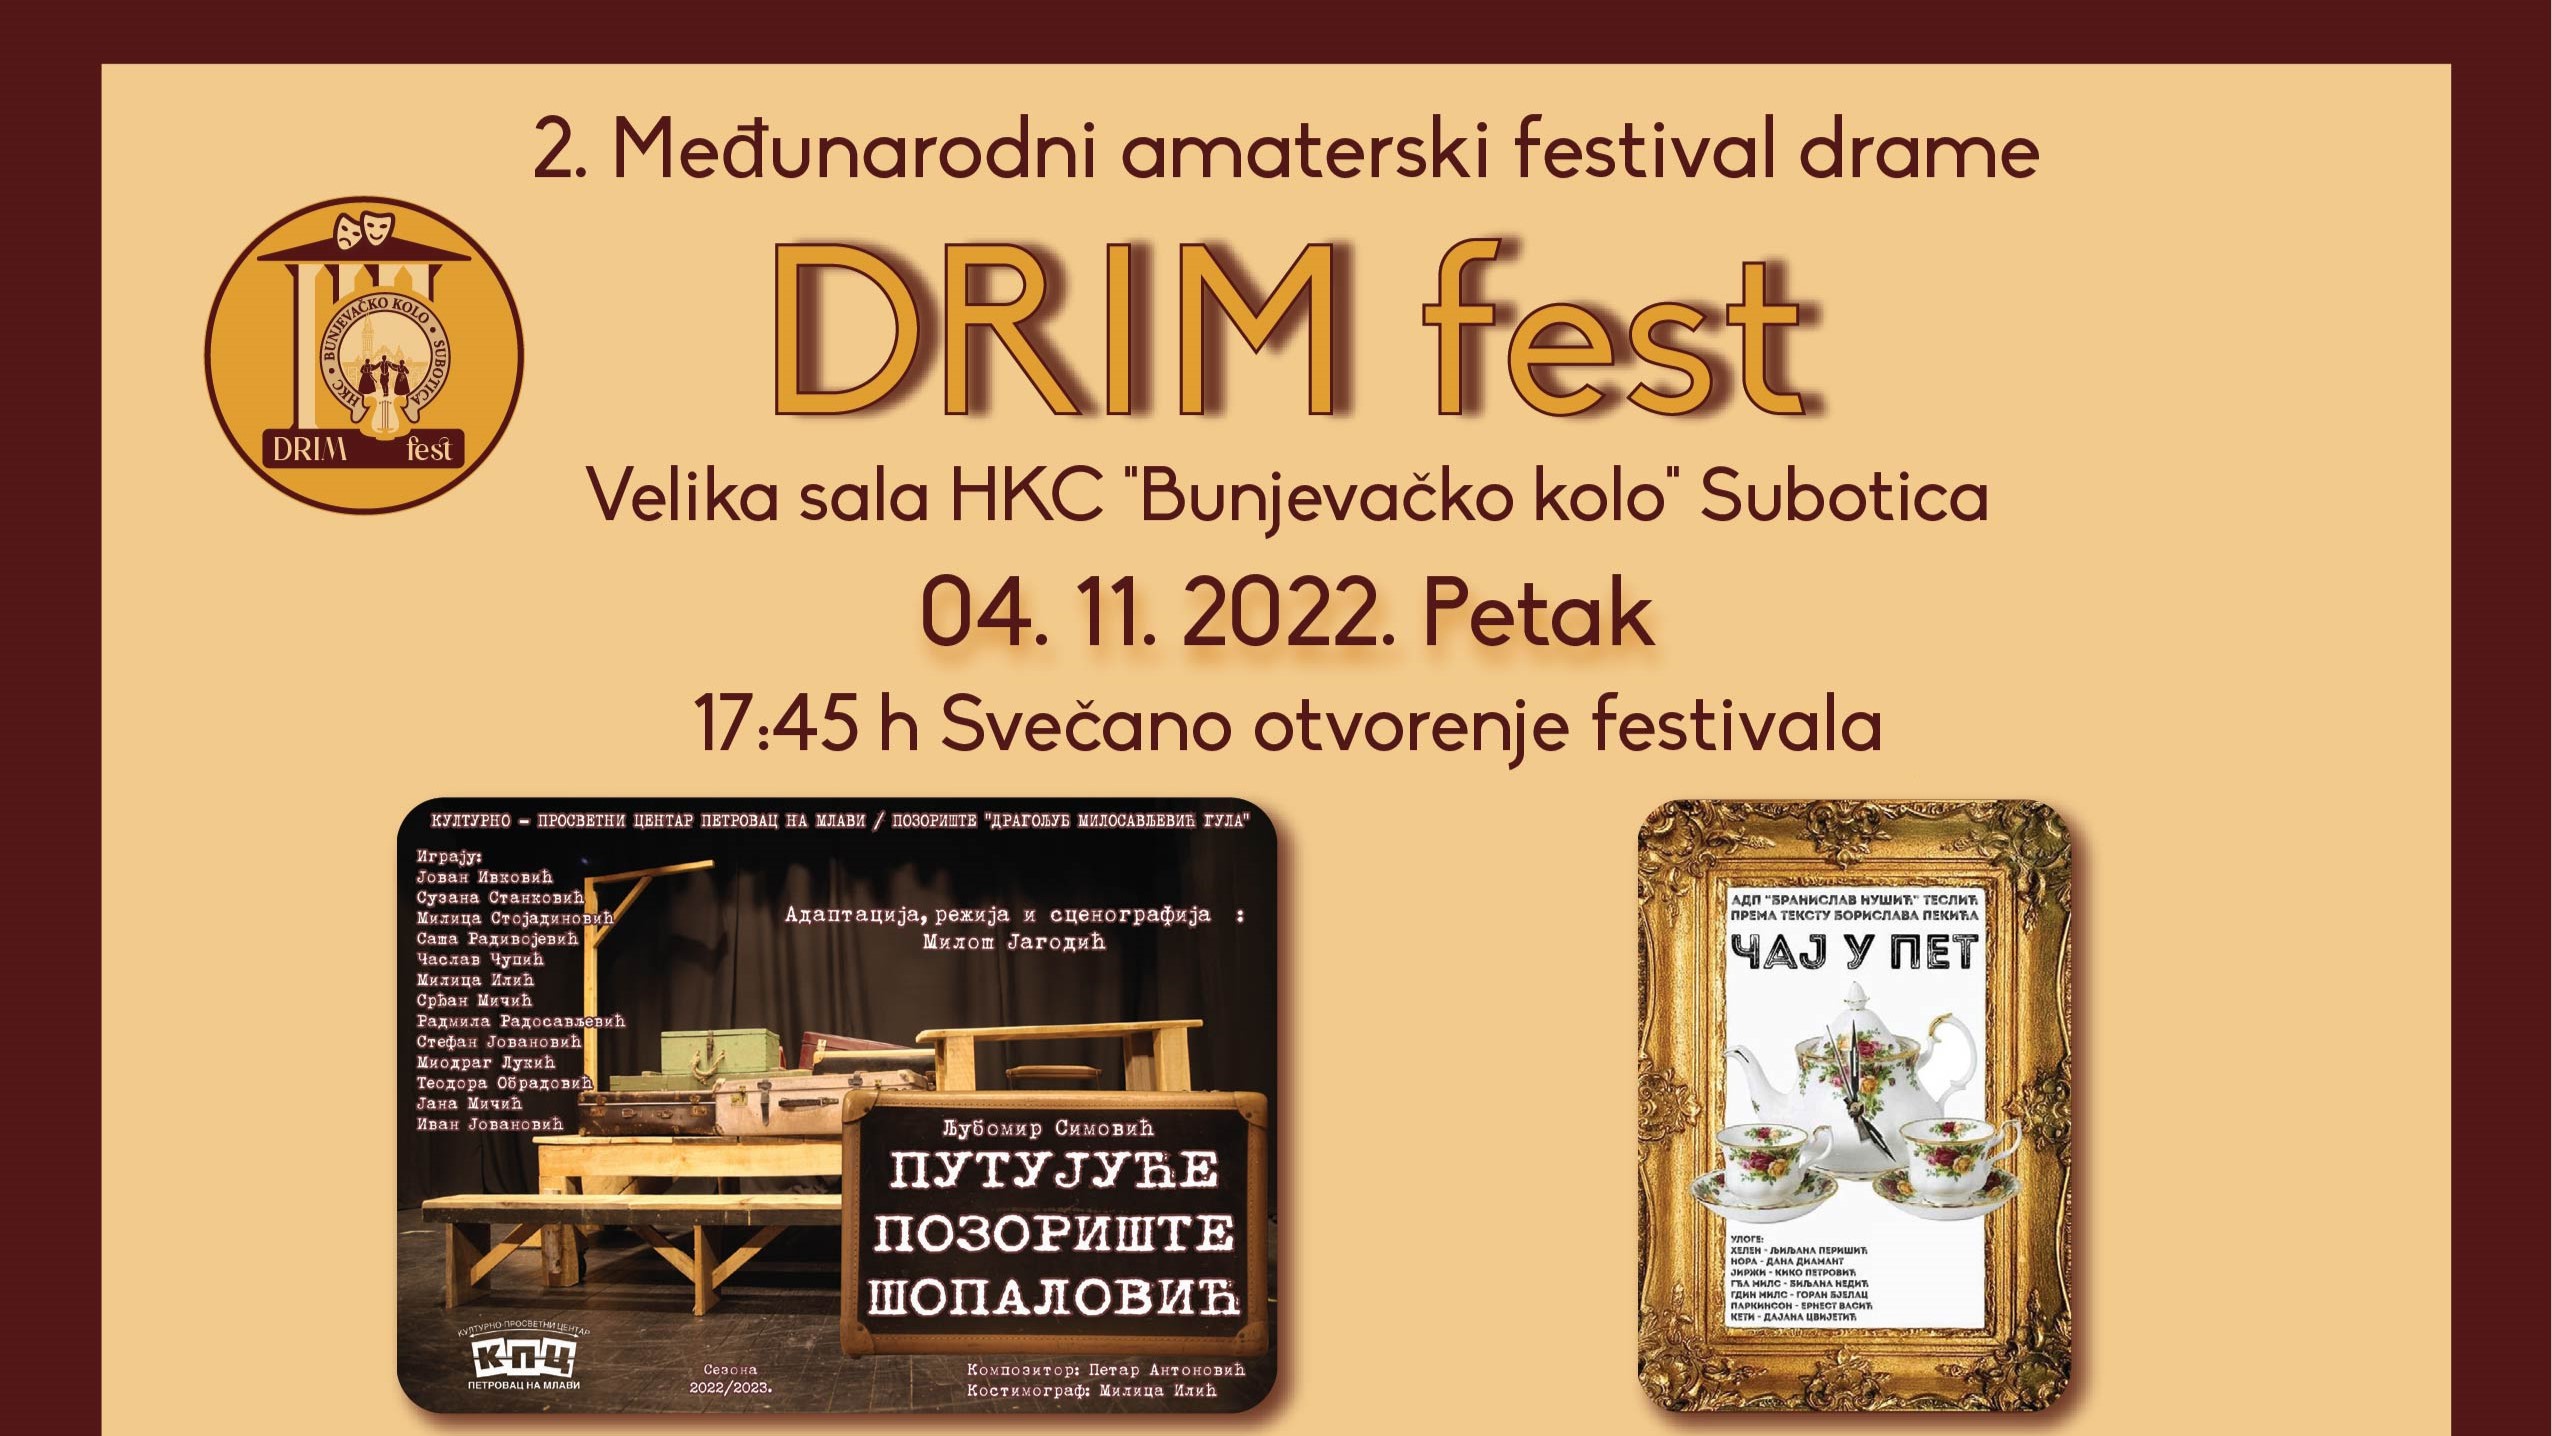 Amaterski festival drame “DRIM fest” održava se od 04. do 05. novembra